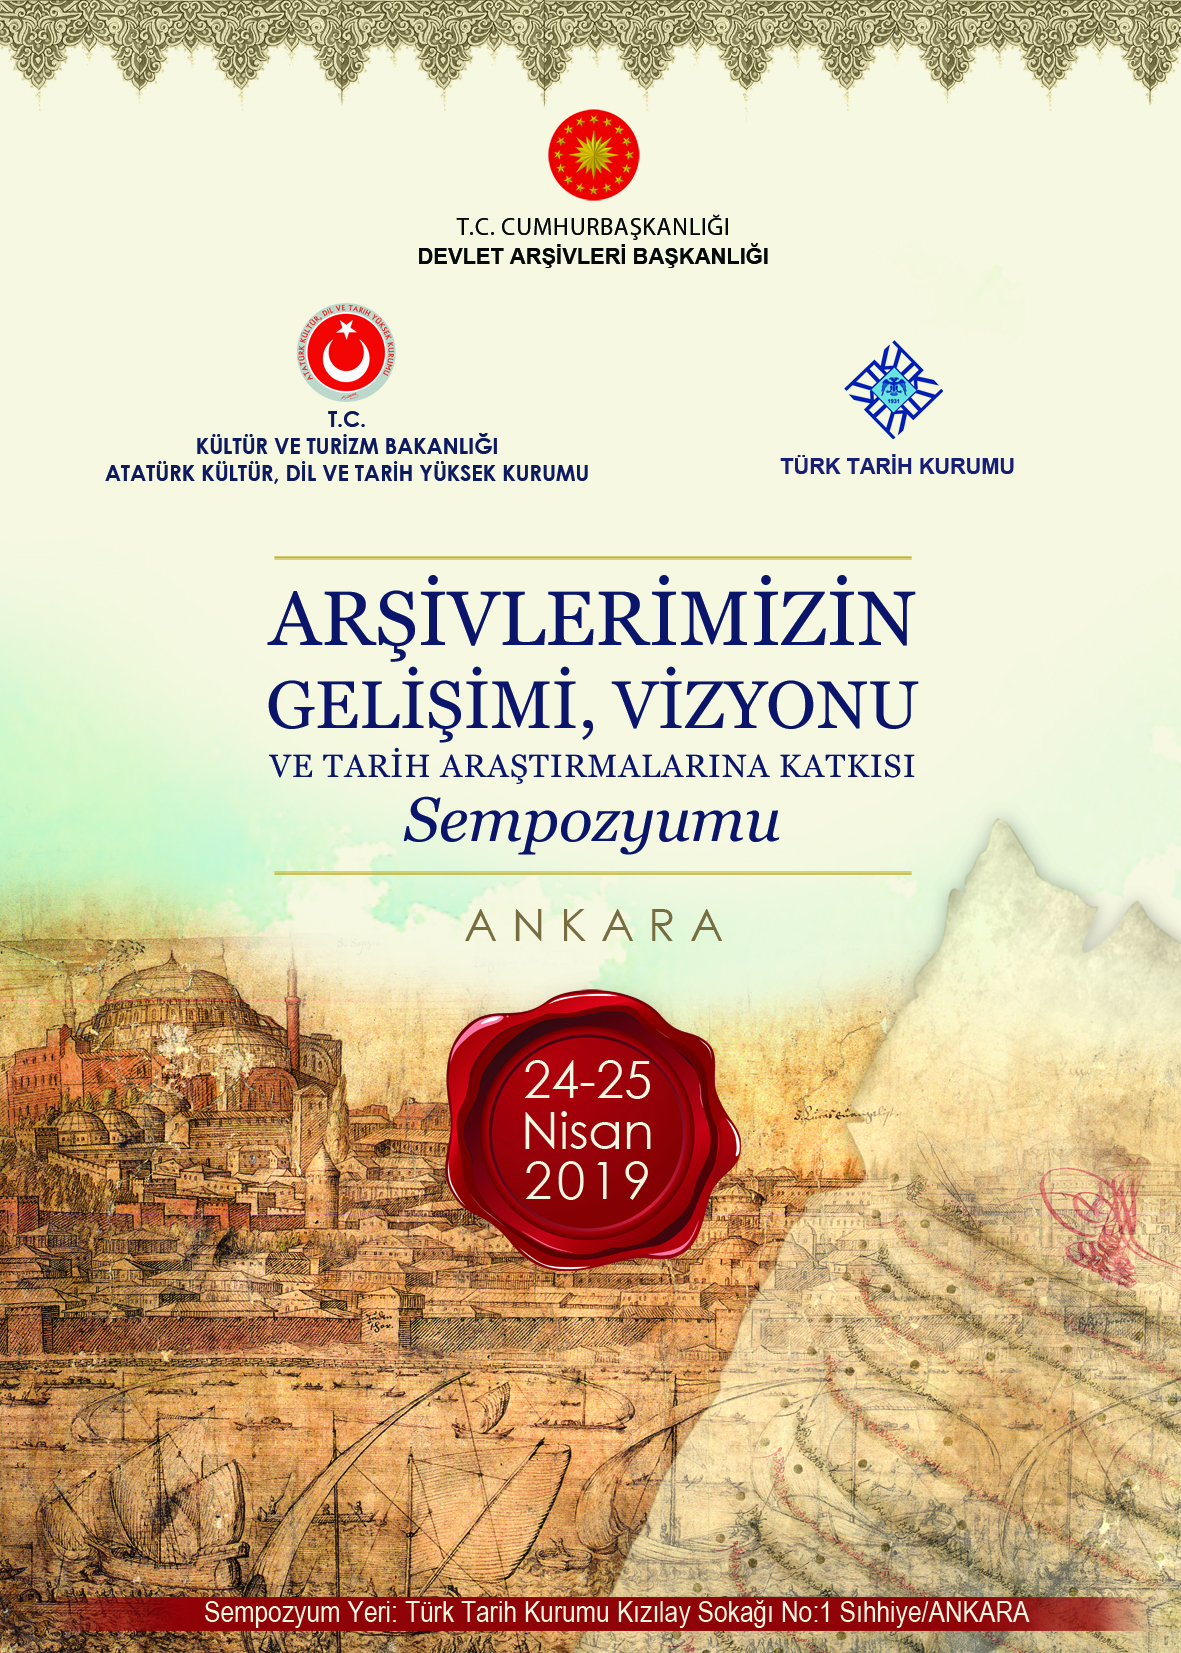 Ankara’da Arşivlerimizin Gelişimi, Vizyonu ve Tarih Araştırmalarına Katkısı Sempozyumu Düzenlenecek